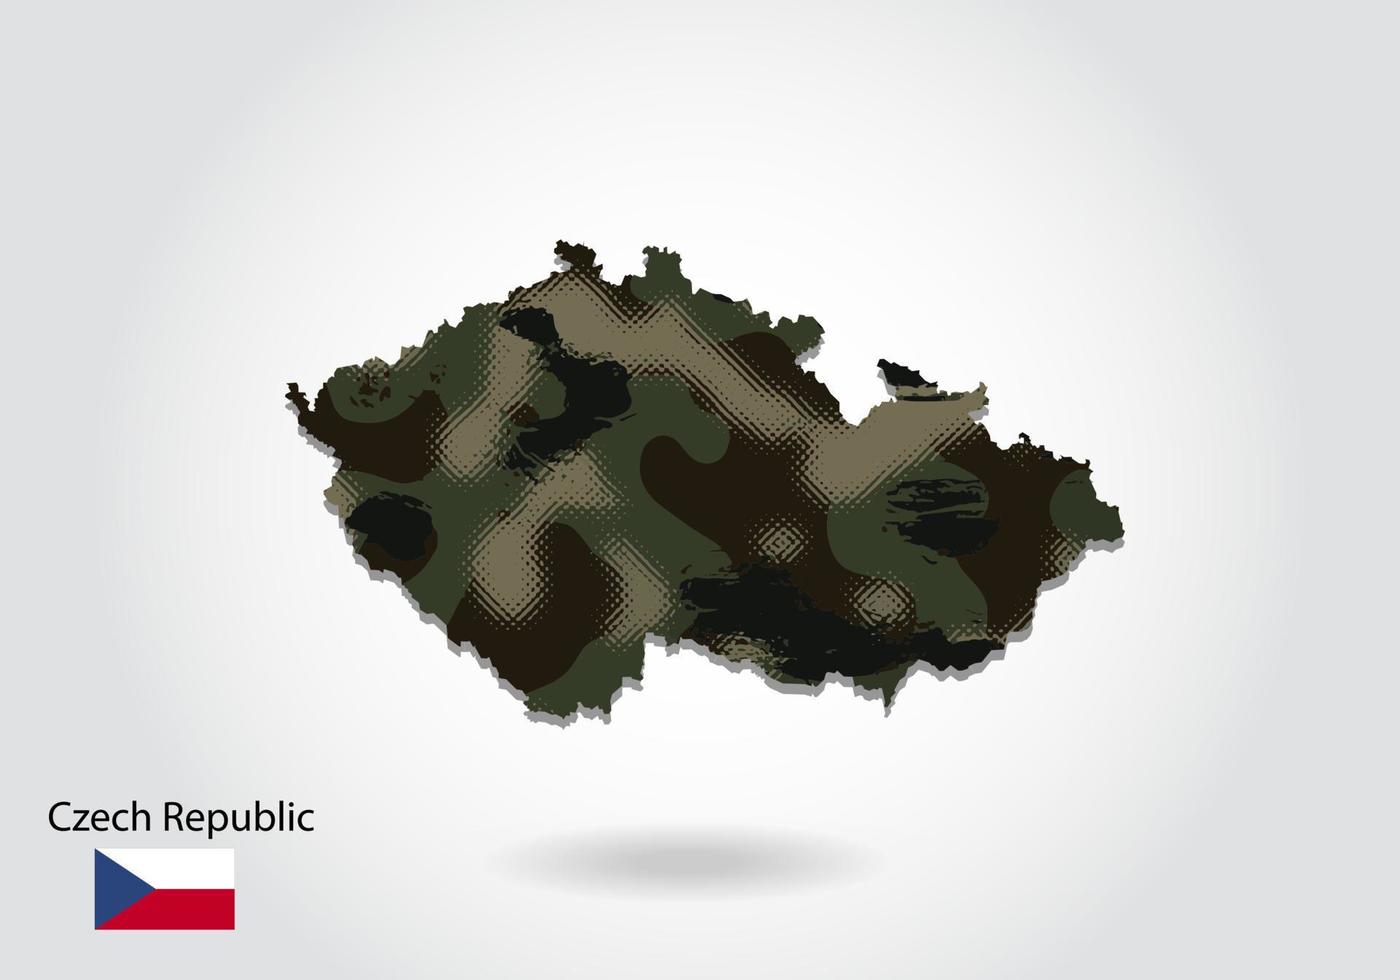 carte de la république tchèque avec motif camouflage, forêt - texture verte sur la carte. concept militaire pour l'armée, le soldat et la guerre. armoiries, drapeau. vecteur